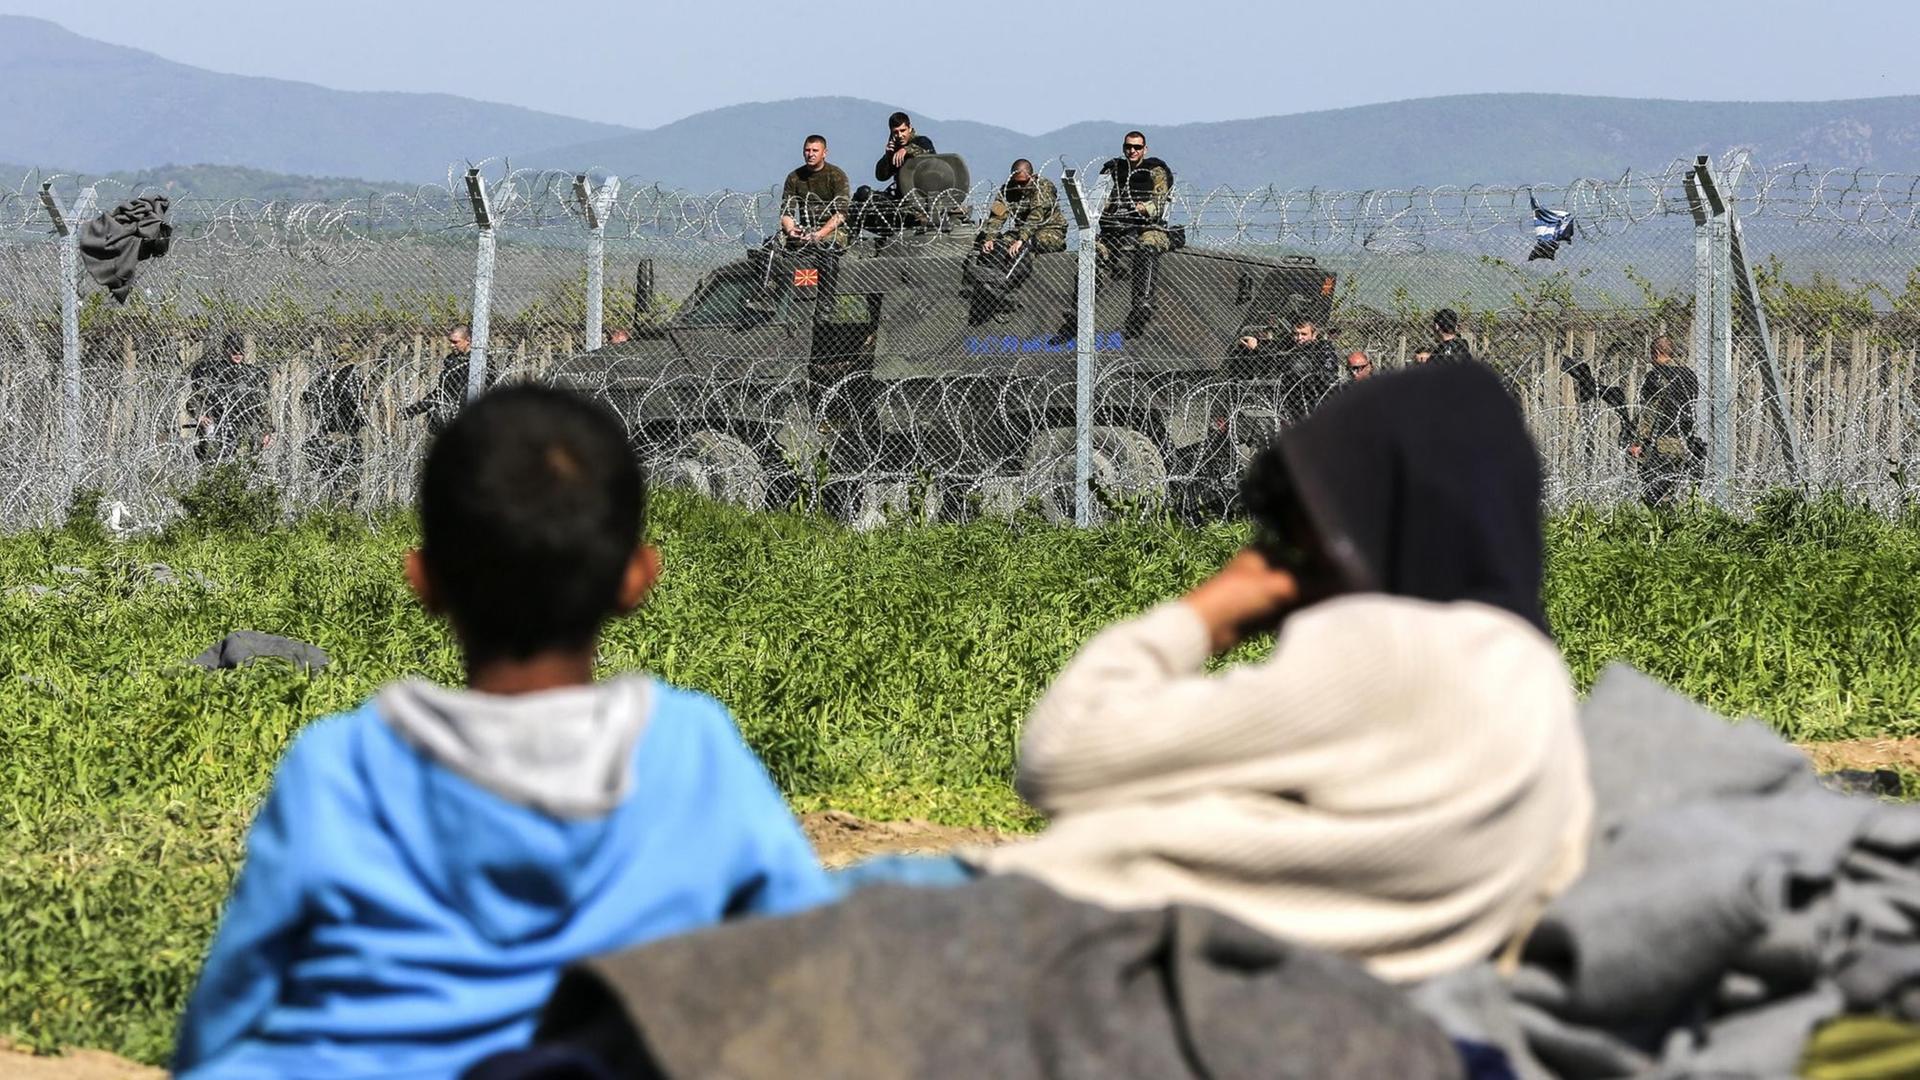 Zwei Flüchtlingskinder liegen im Gras vor einem Stacheldrahtzaun, der Griechenland von Mazedonien trennt. Im Hintergrund ist ein Panzer mit Grenzschutzbeamten zu sehen.